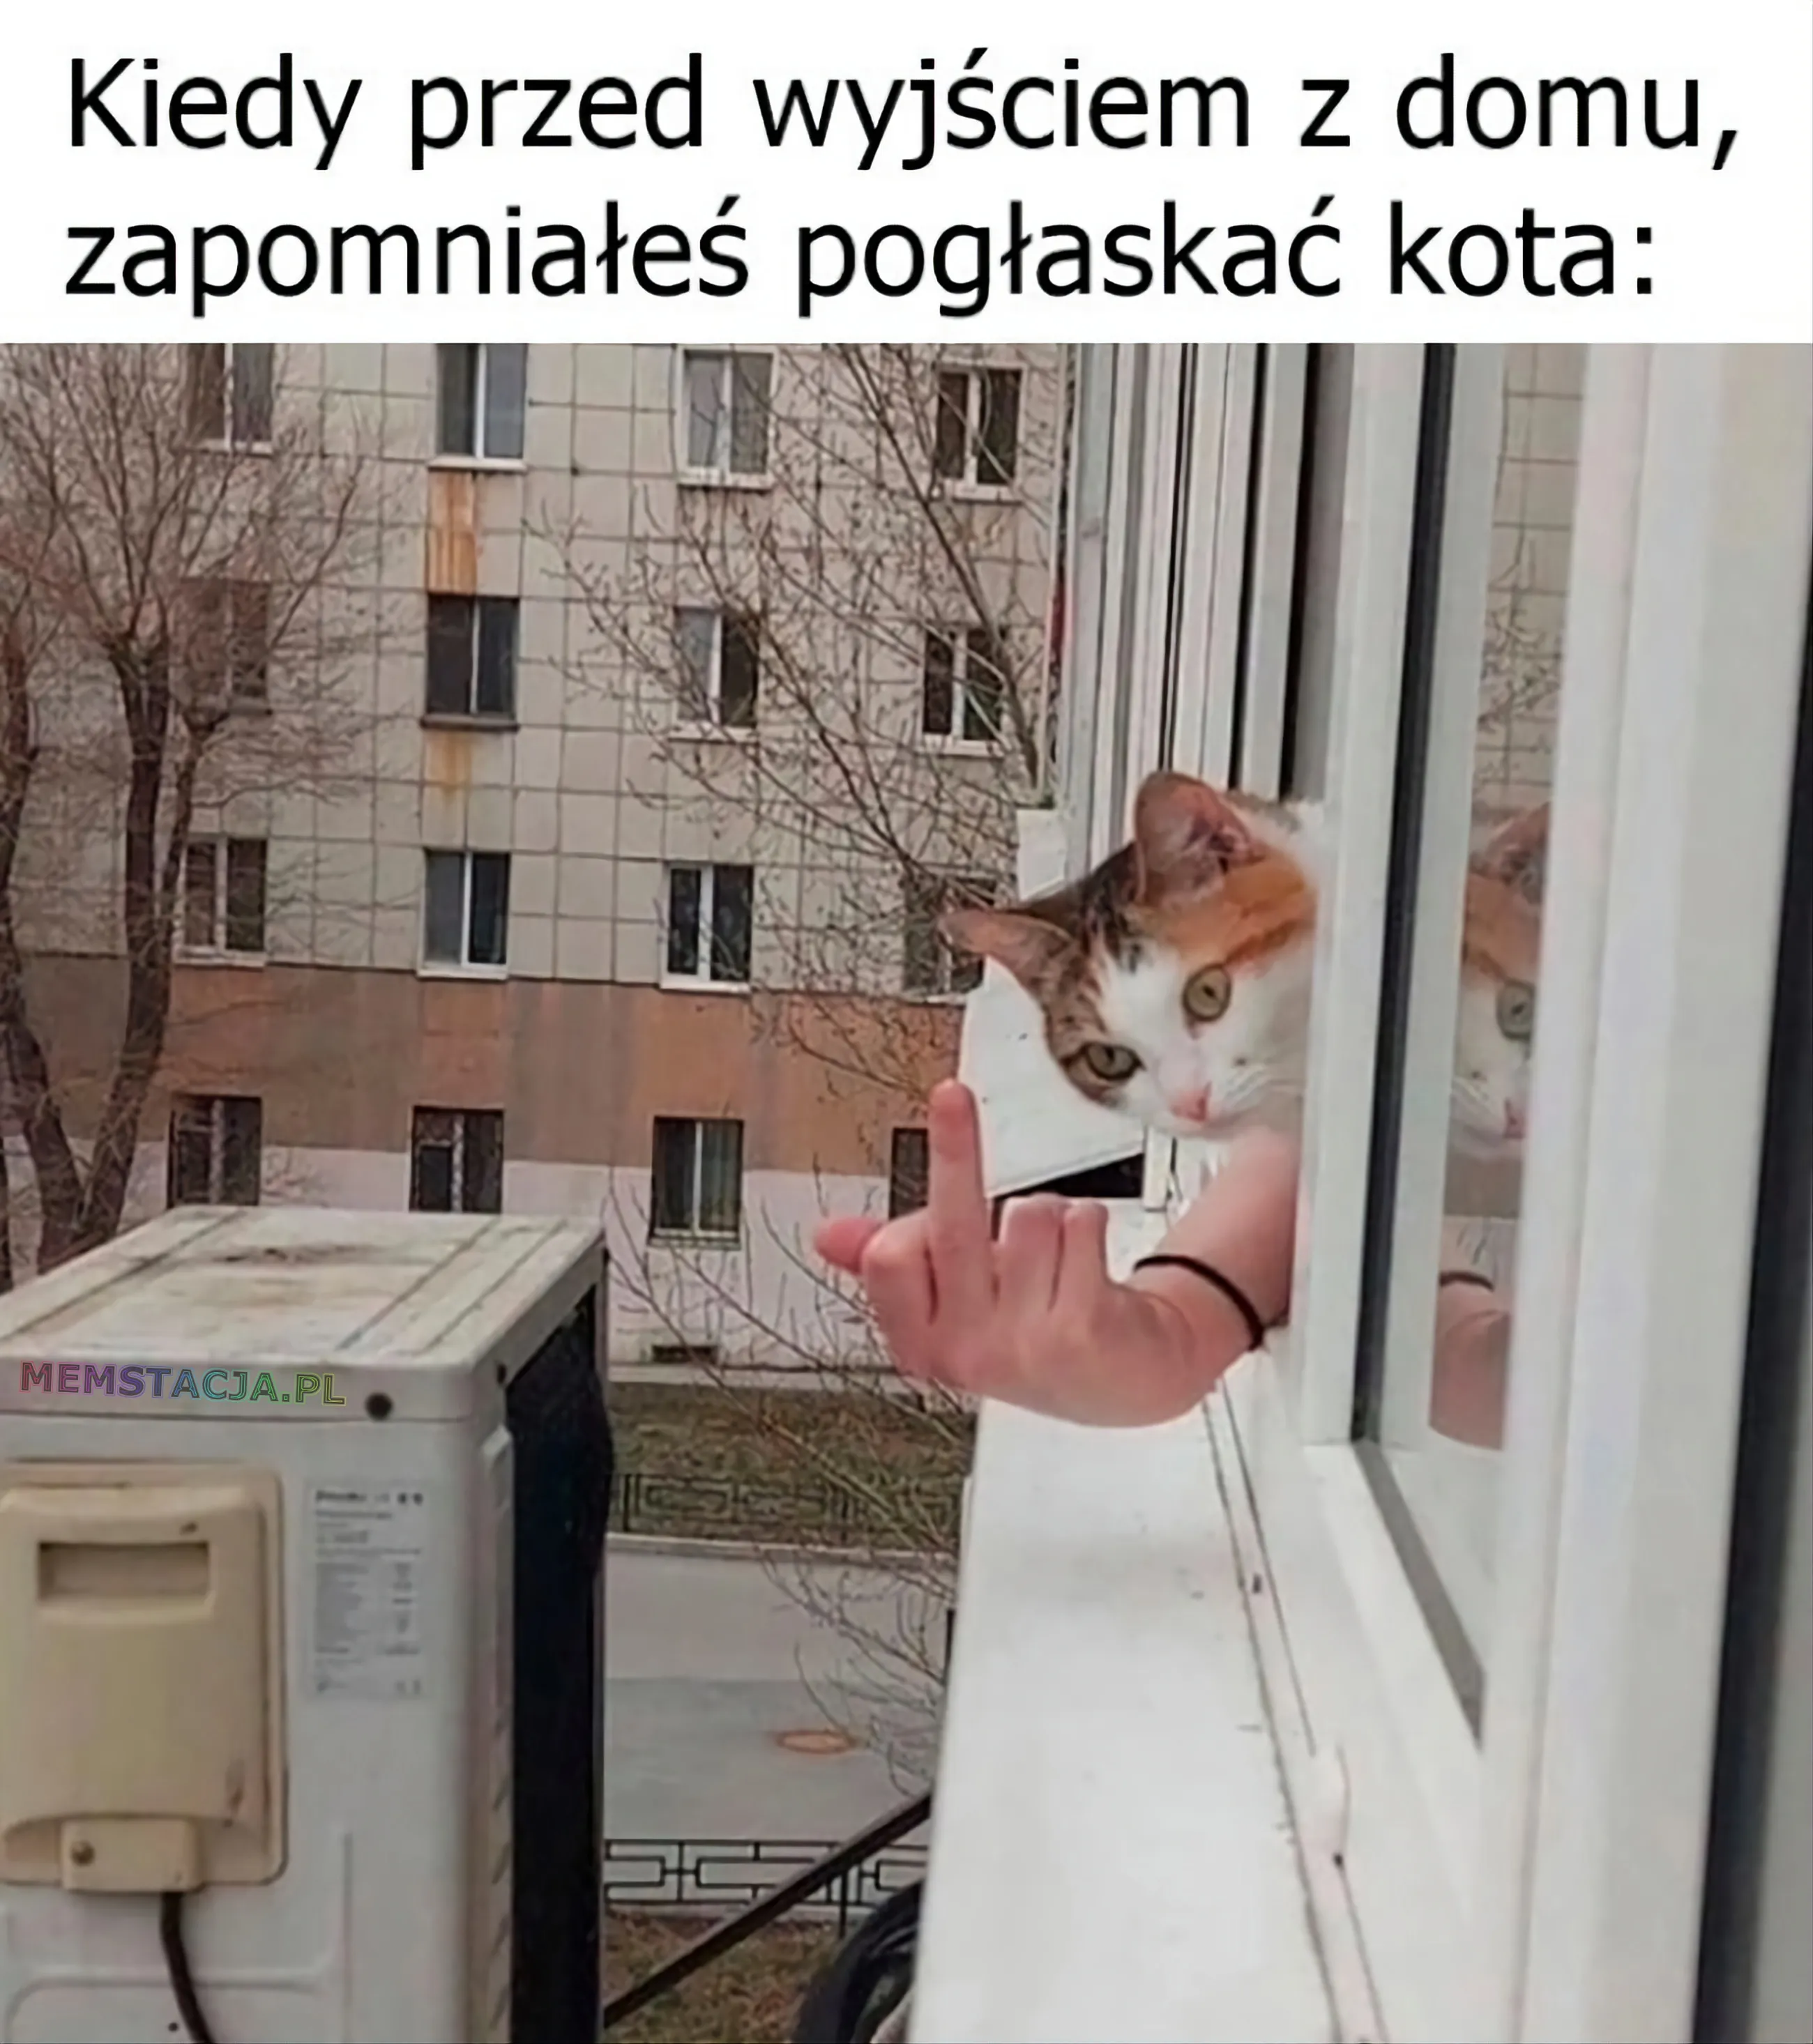 Zdjęcie wyglądającego kotka przez okno: 'Kiedy przed wyjściem z domu, zapomniałeś pogłaskać kota'